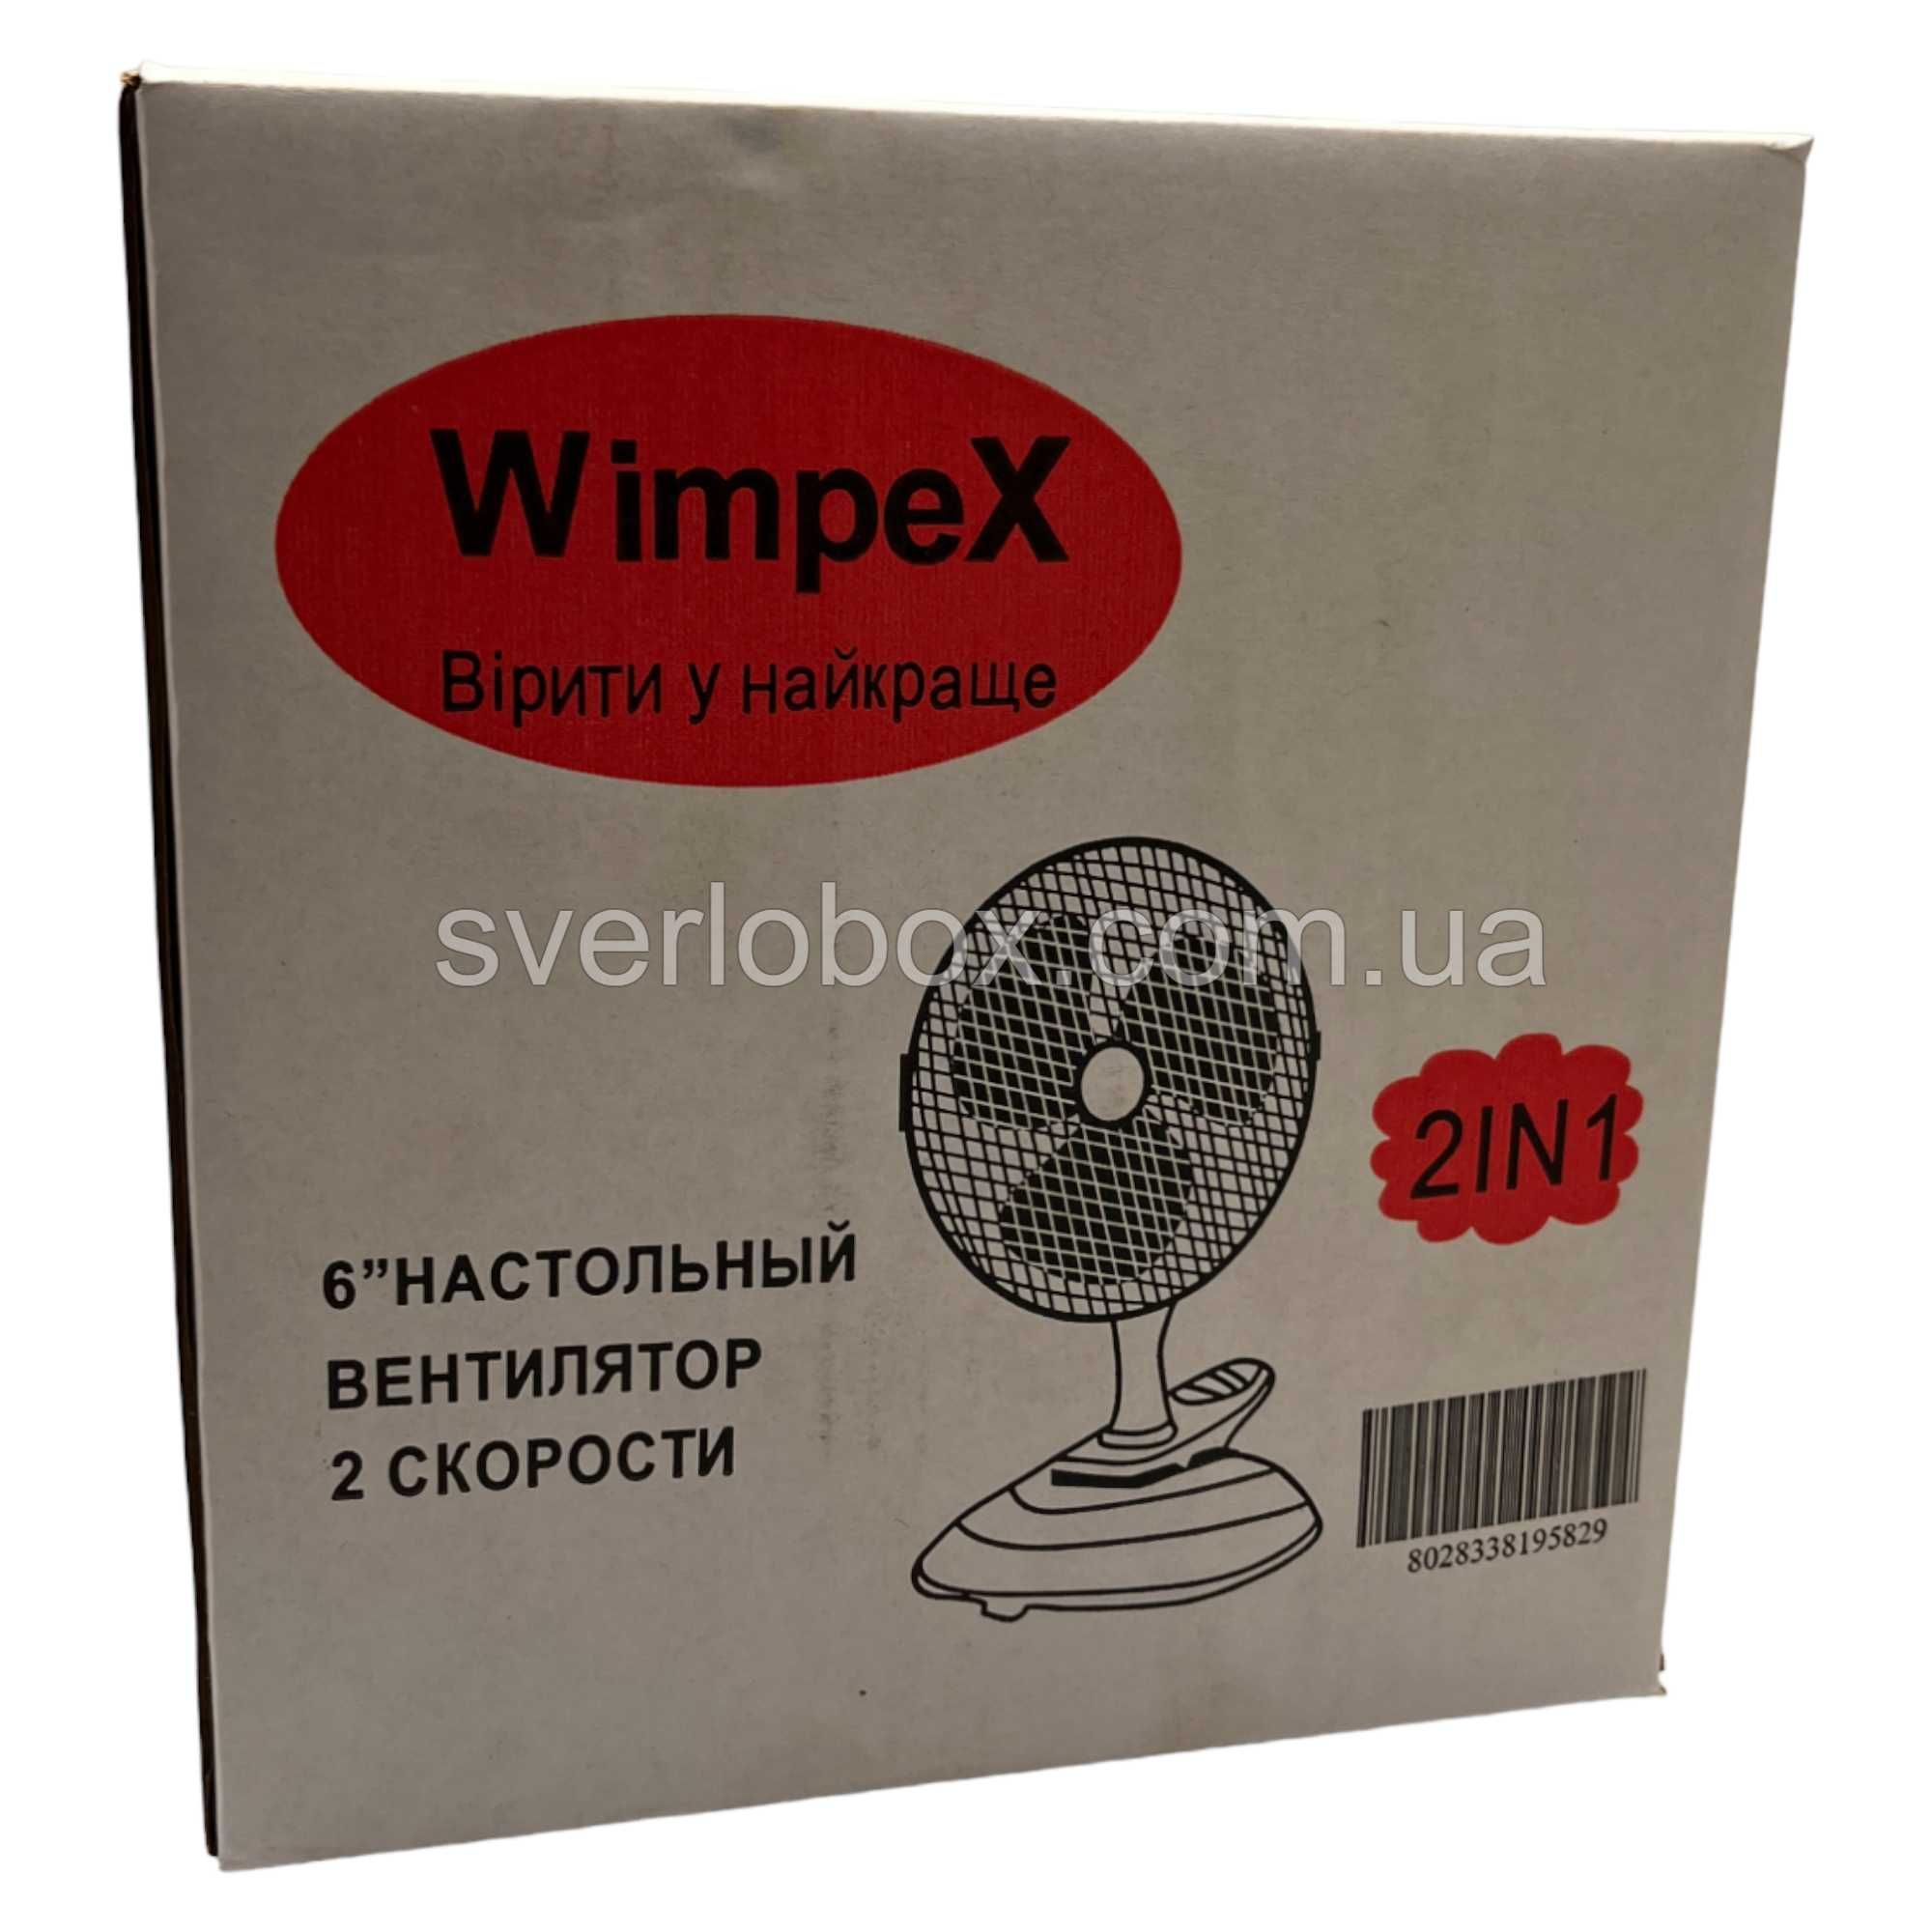 Настольный вентилятор Wimpex WX-707